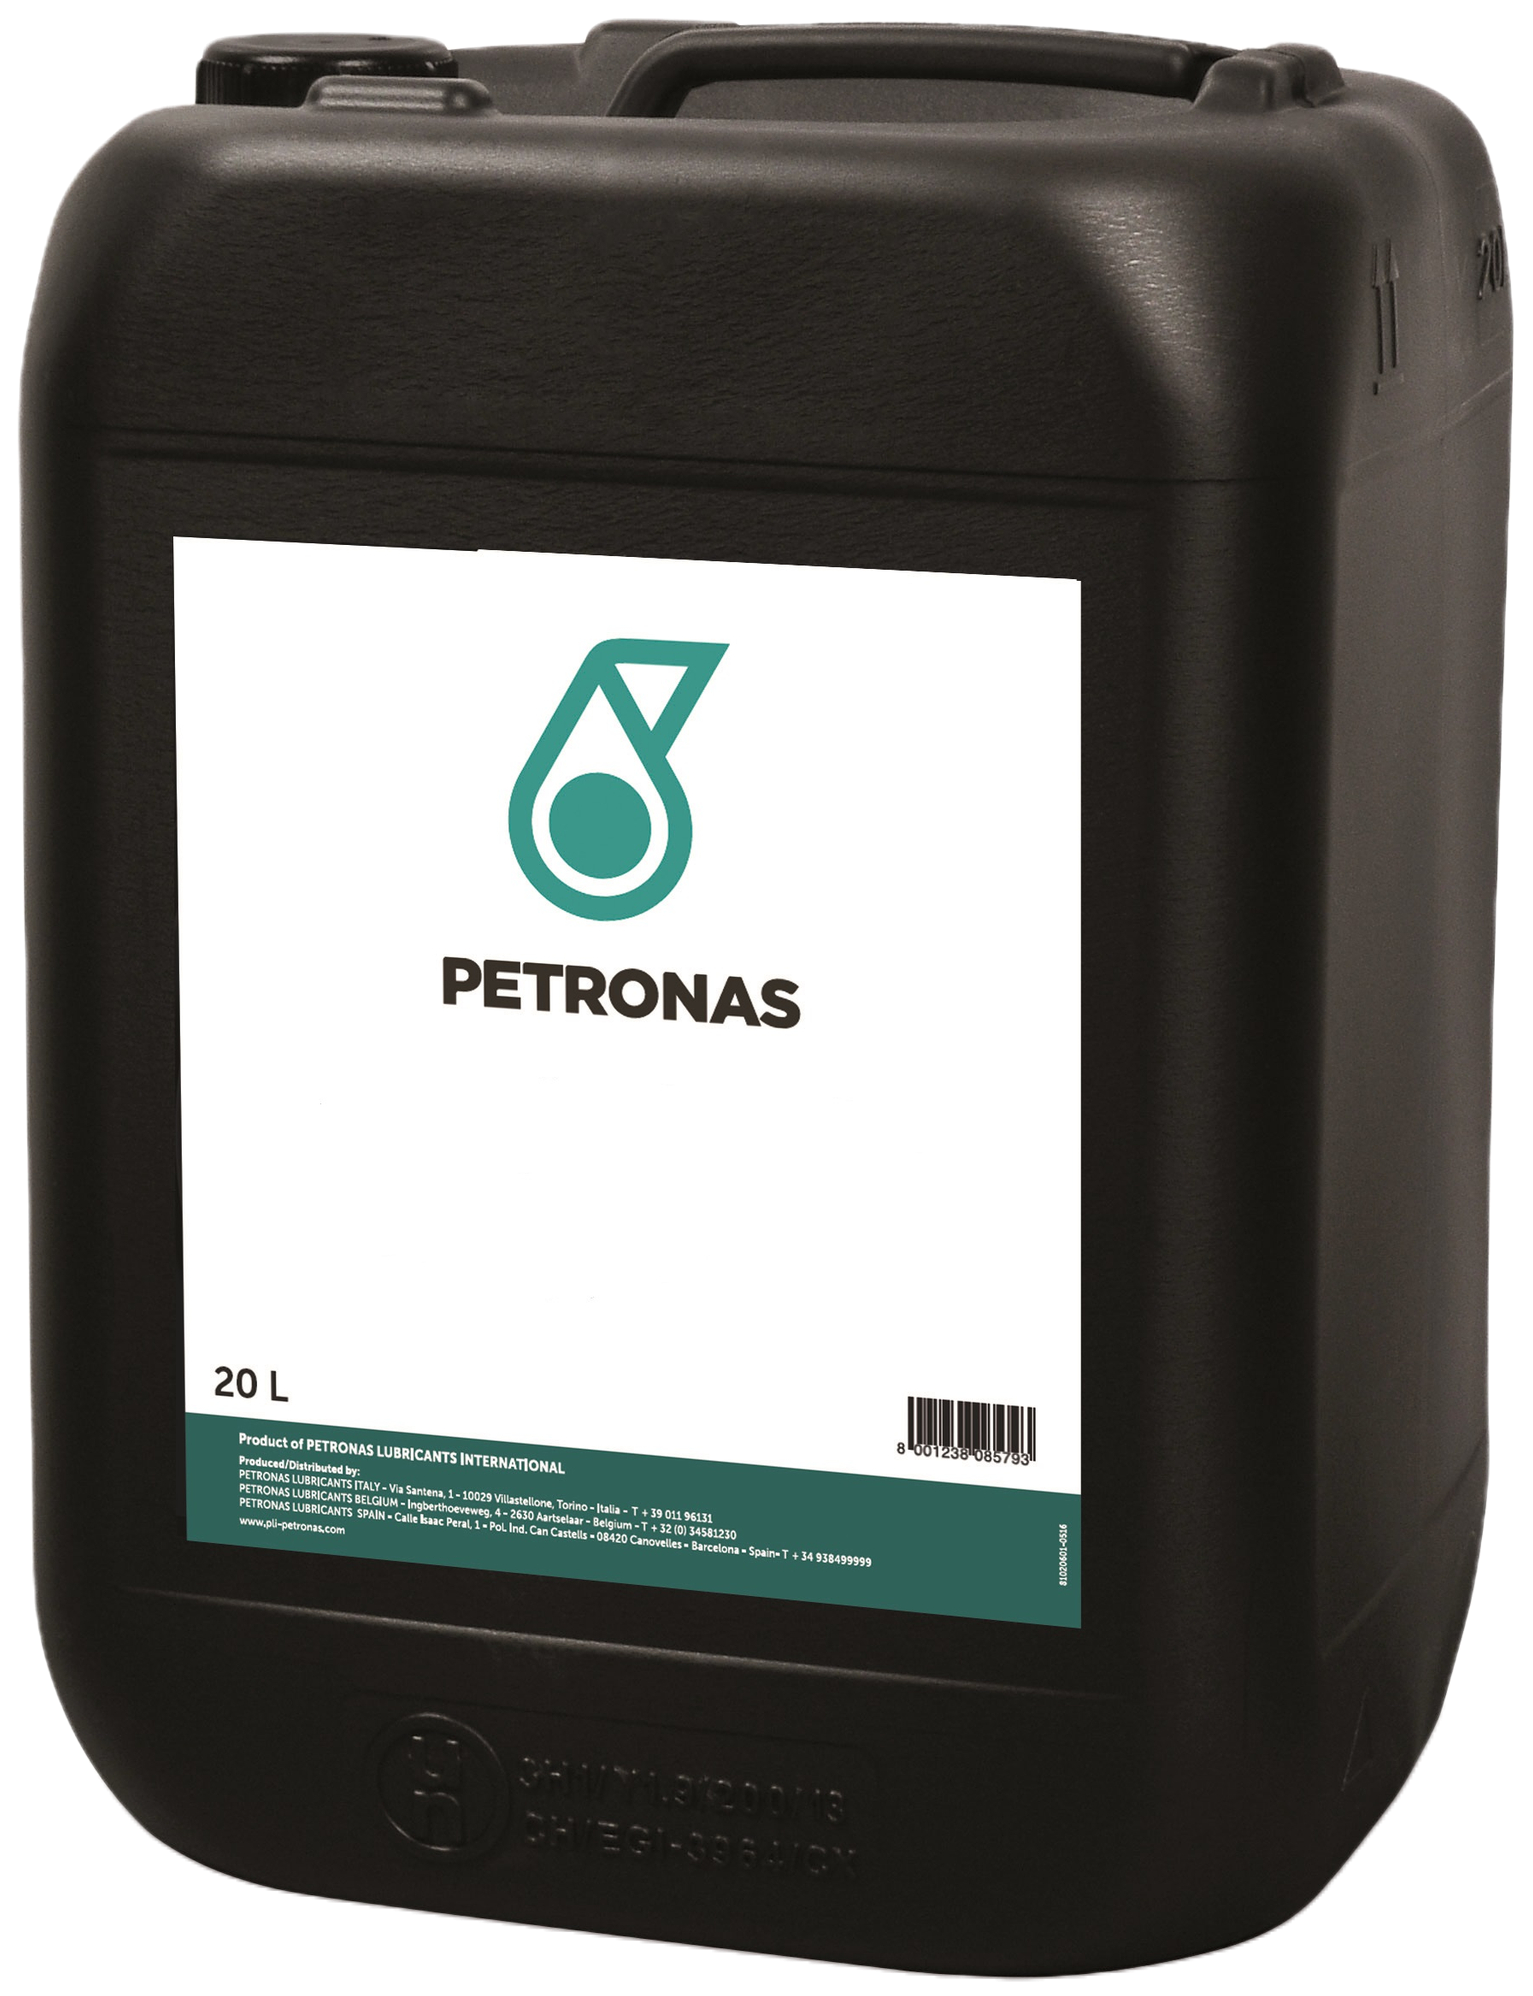 P303P1910-20 Petronas Hydraulic HLPD Serie is een gamma van hydrauliekoliën met zeer hoge prestaties en bescherming tegen slijtage.